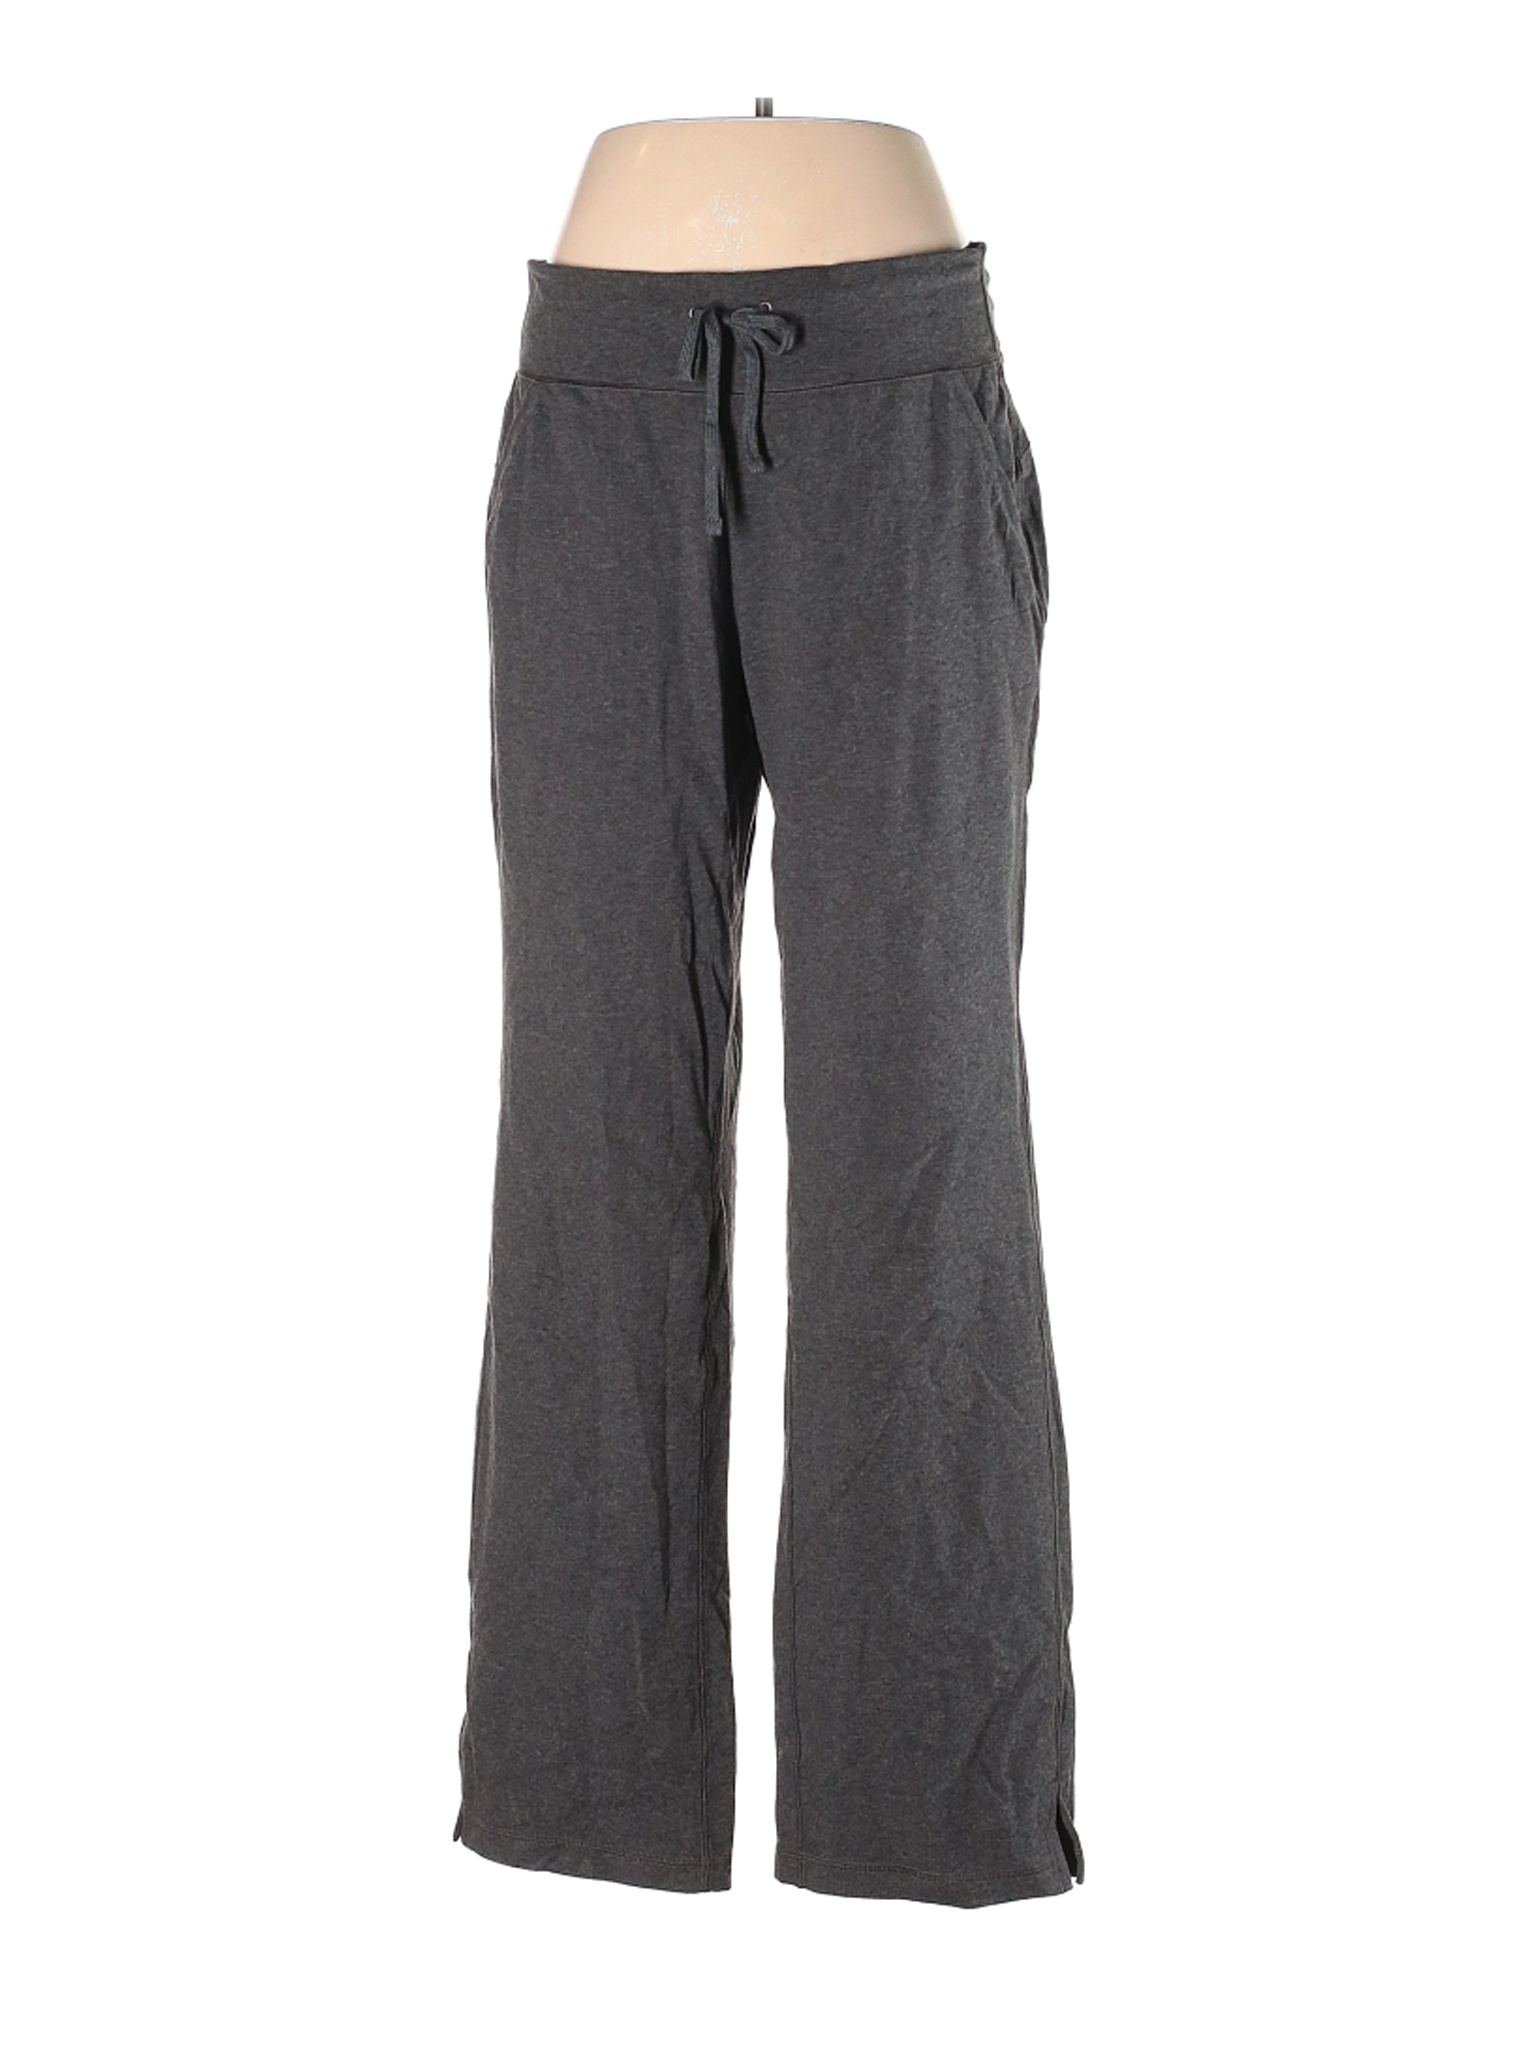 Tek Gear Women Gray Casual Pants L | eBay